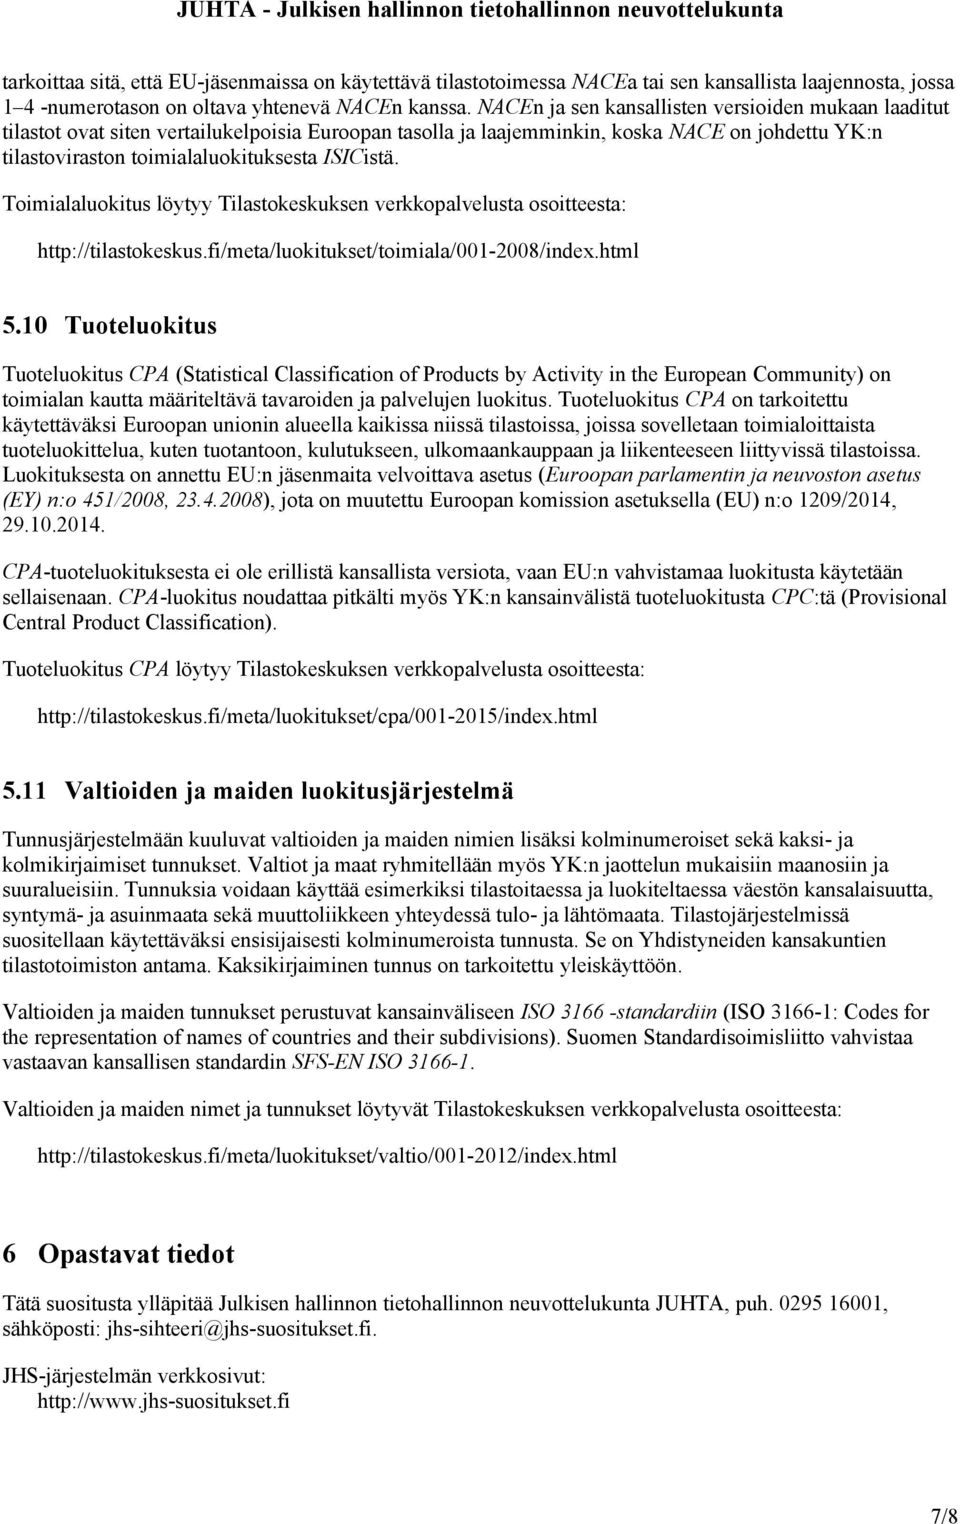 Toimialaluokitus löytyy Tilastokeskuksen verkkopalvelusta osoitteesta: http://tilastokeskus.fi/meta/luokitukset/toimiala/001-2008/index.html 5.